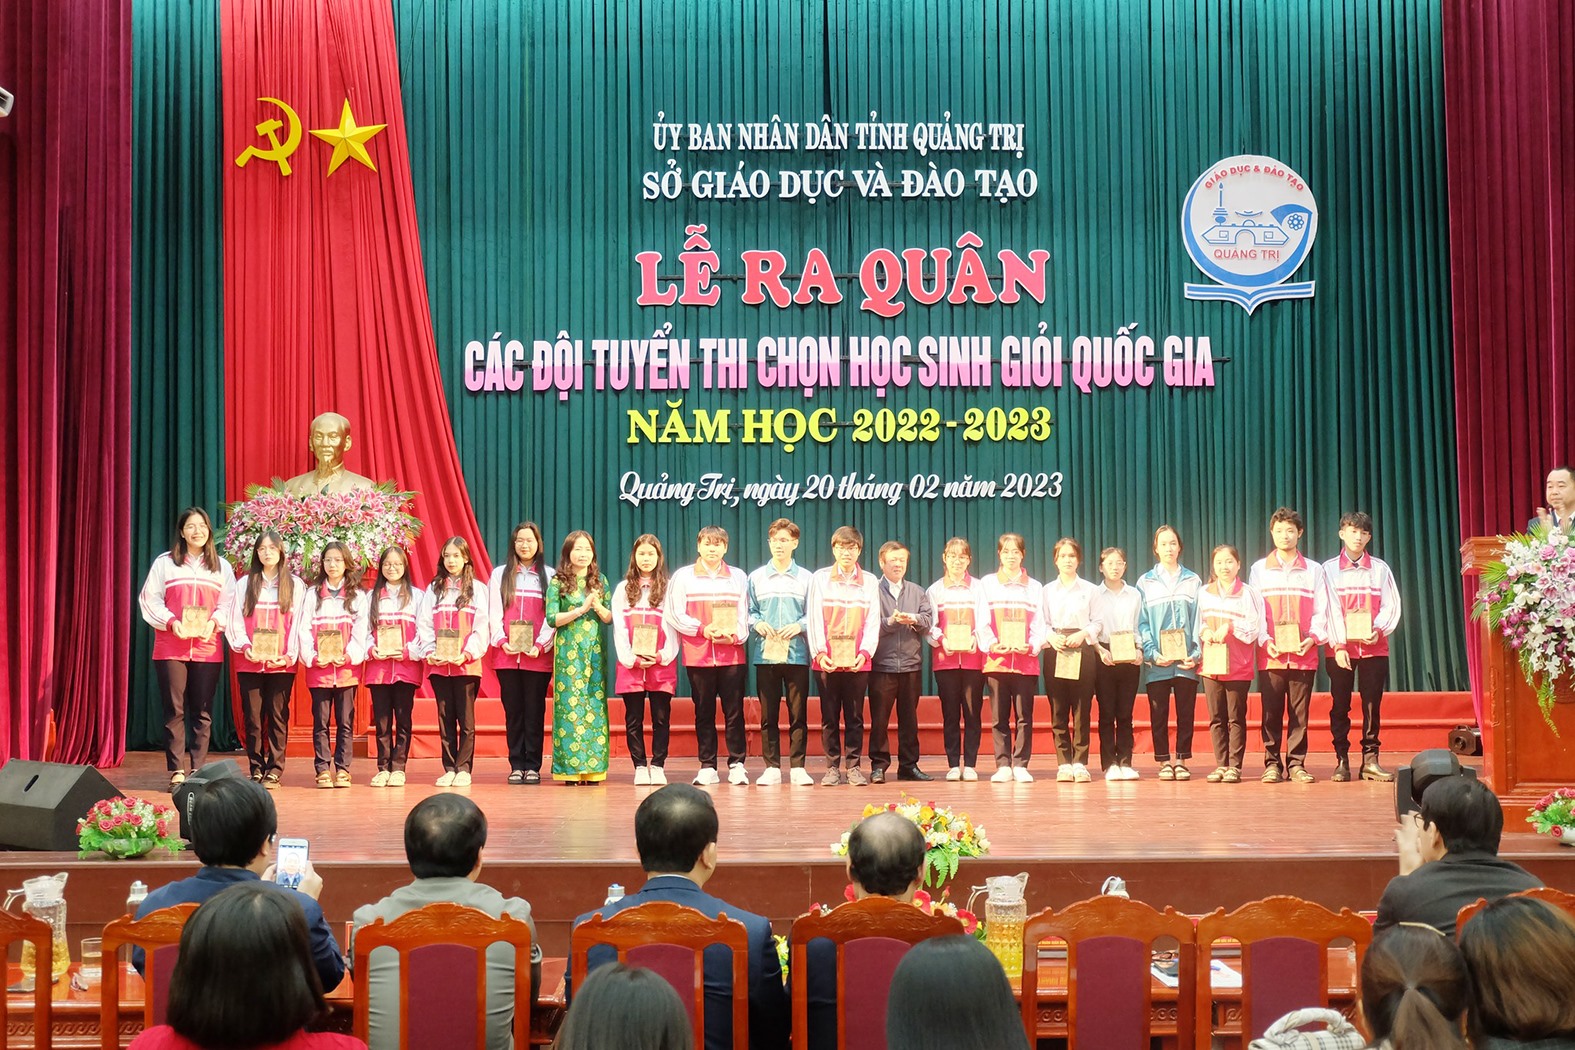 Học sinh đội tuyển trong lễ ra quân Kỳ thi chọn học sinh giỏi quốc gia THPT năm học 2022 - 2023 - Ảnh: Tú Linh